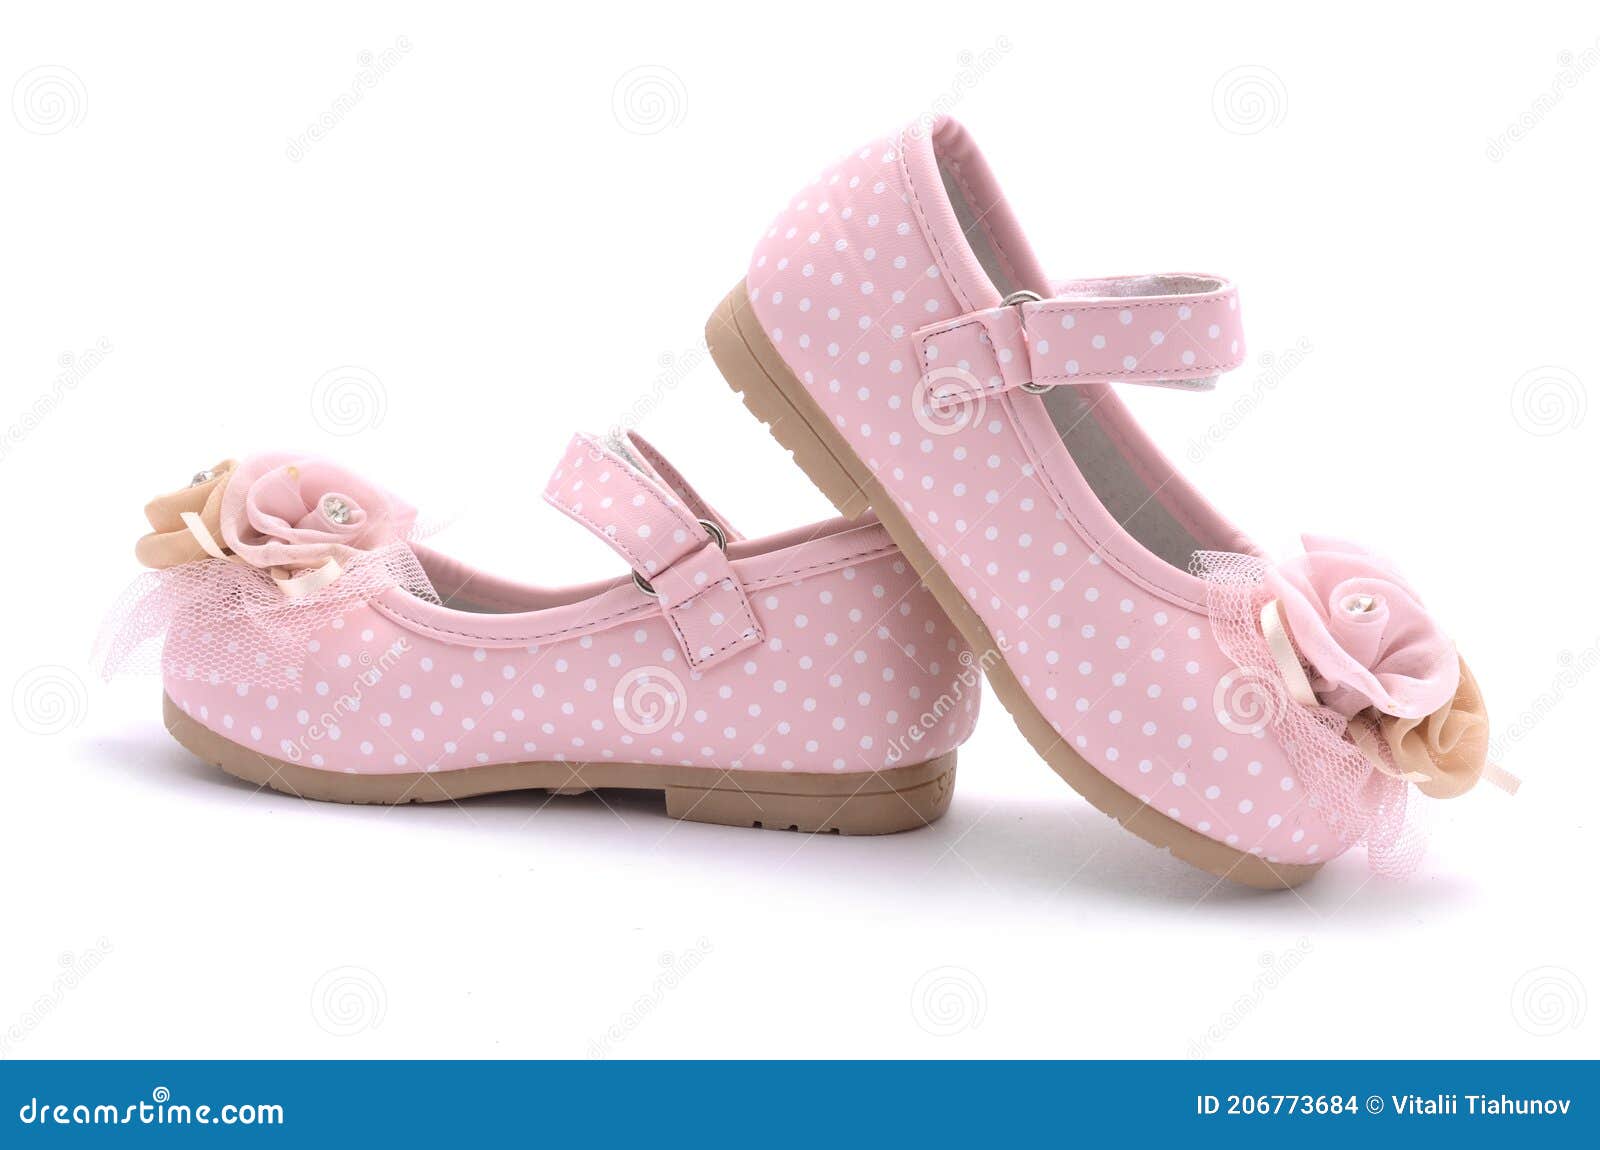 Baby Pink Shoes Isolated on White Stock Photo - Image of rhinestone ...